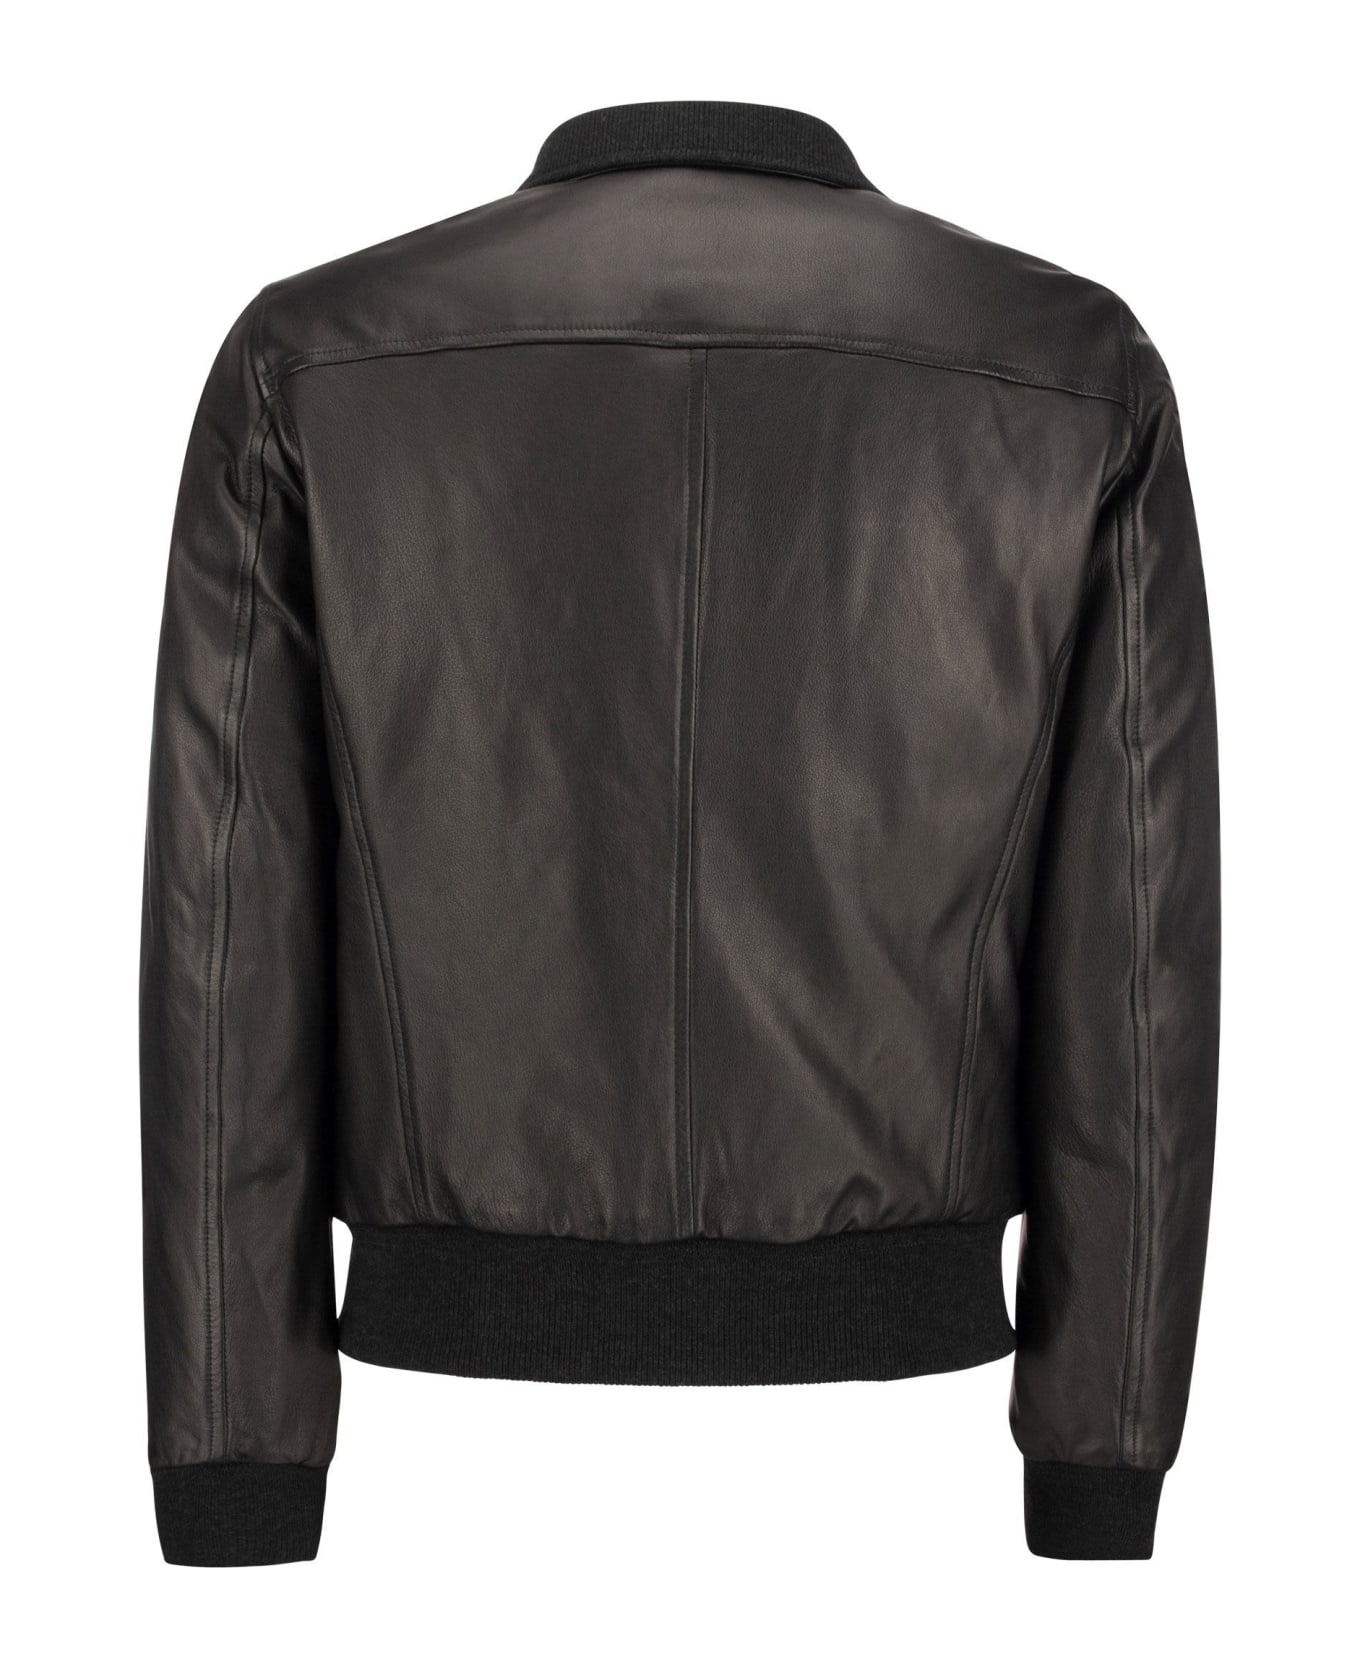 Stewart Colorado - Padded Leather Jacket - Black レザージャケット